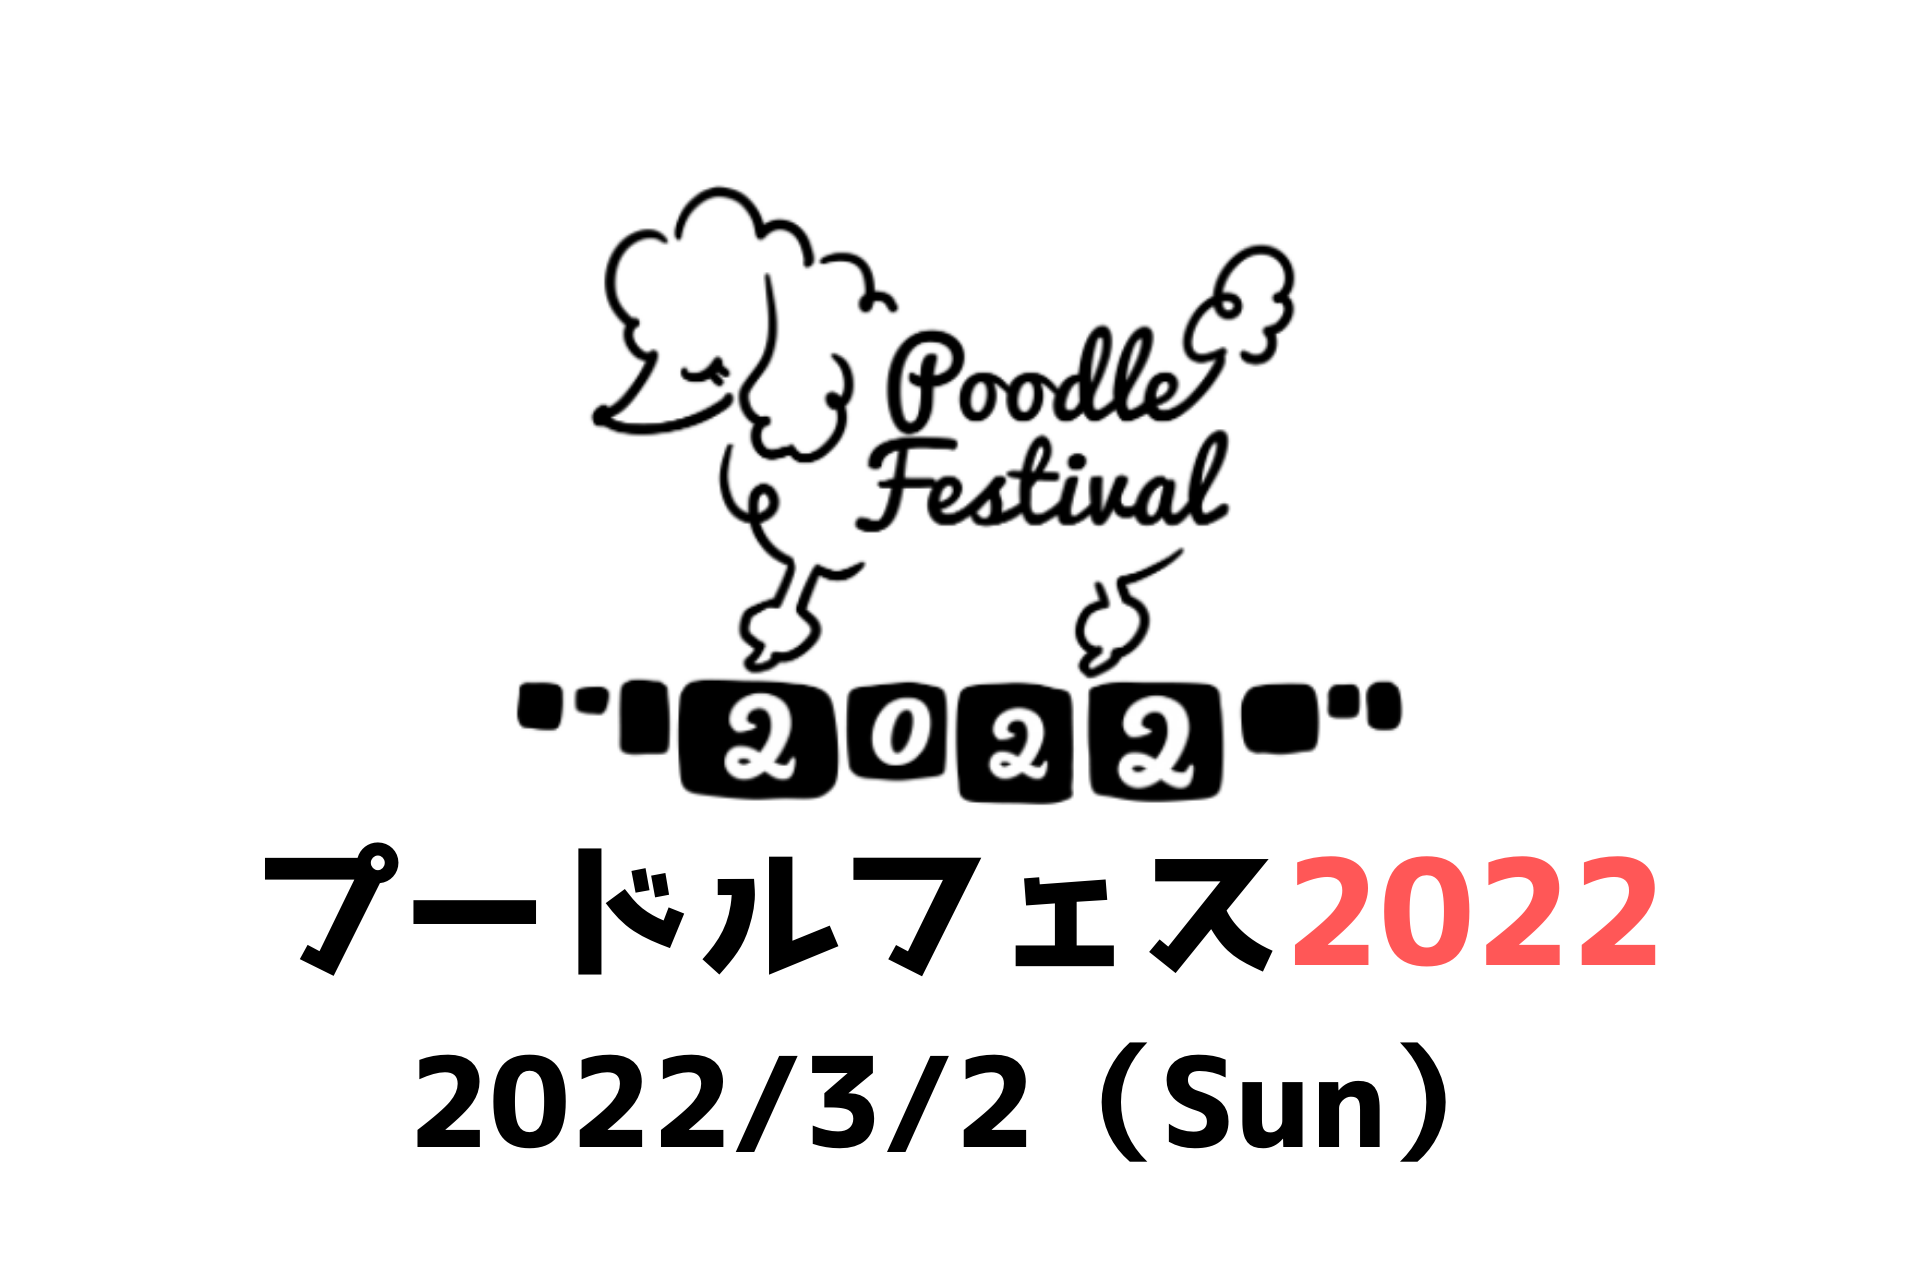 プードルフェス2022、プードルフェスティバル2022、東京都江東区夢の島。イーノの森Garden、ペットと行けるイベント、犬と行けるイベント、ペット同伴可能なイベント、ワンコ同伴可能なイベント、